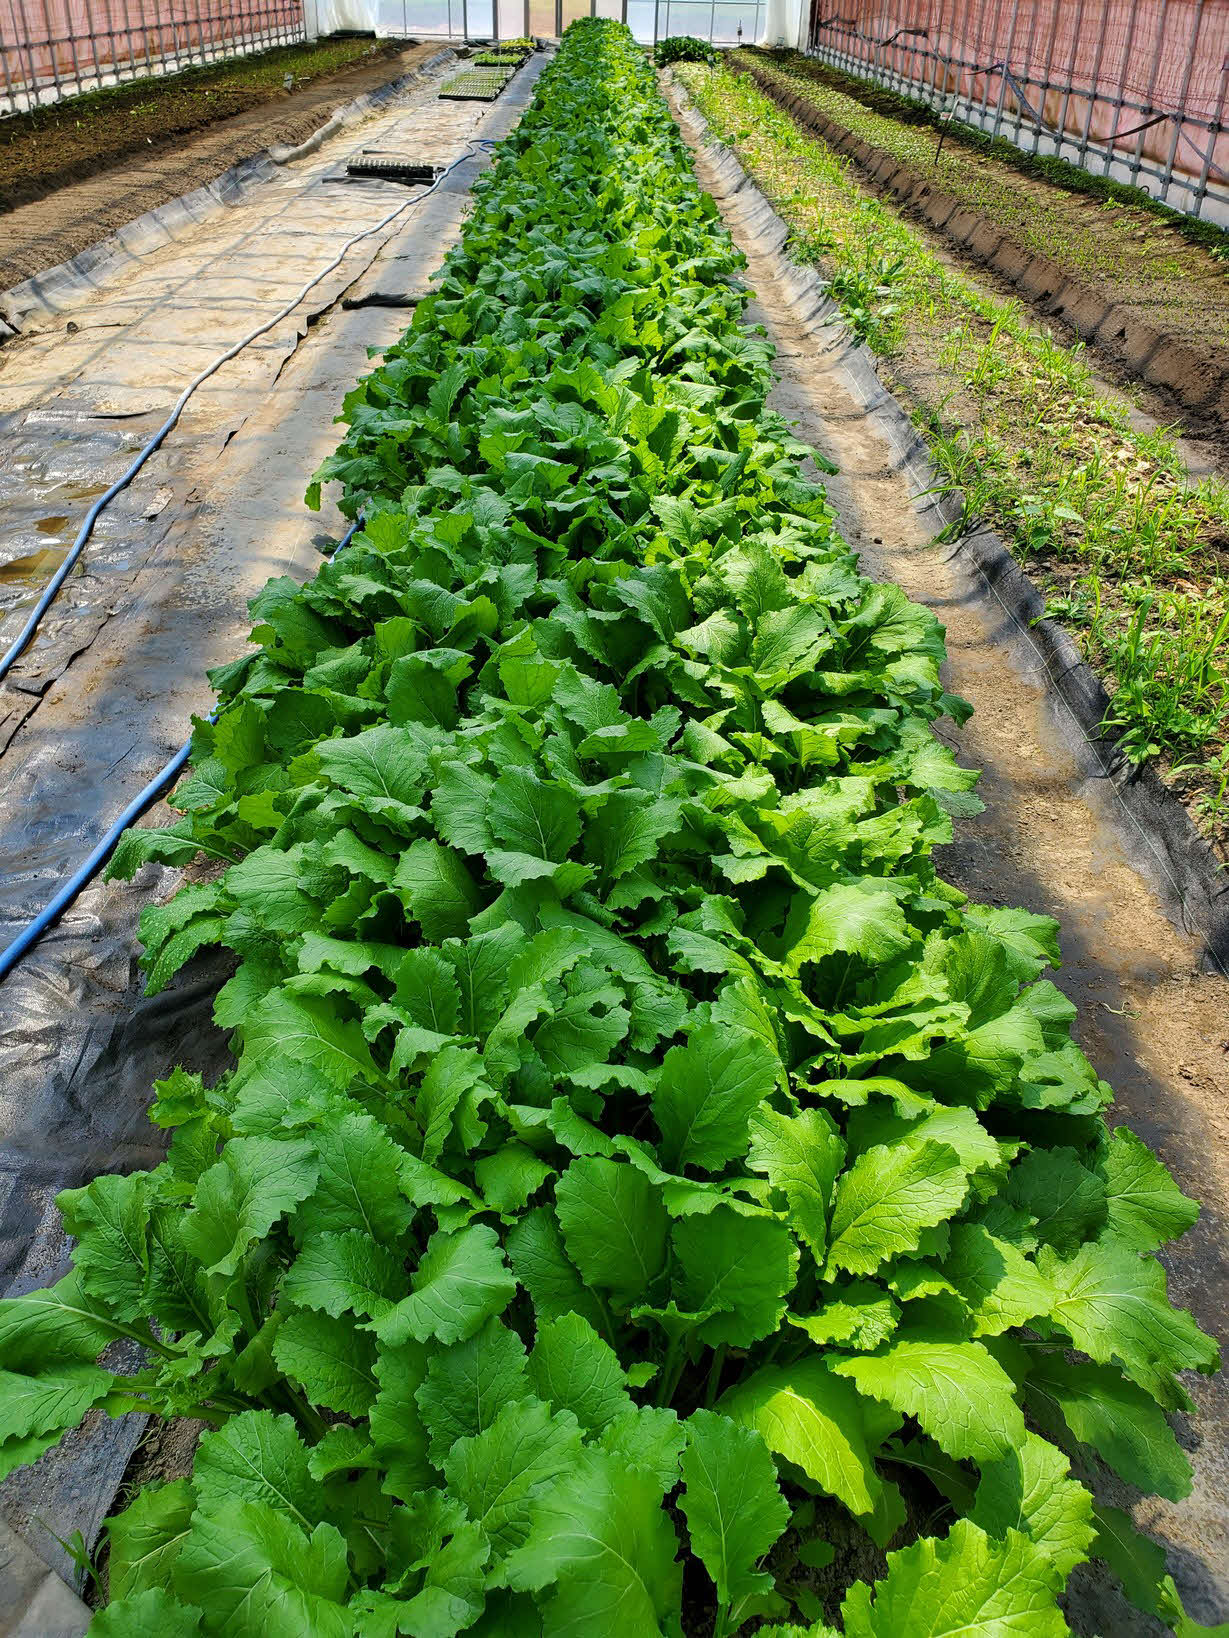 川村博さんがトルコギキョウ栽培用の土地に、一部野菜を作付けしている。写真はカブ（本人提供）